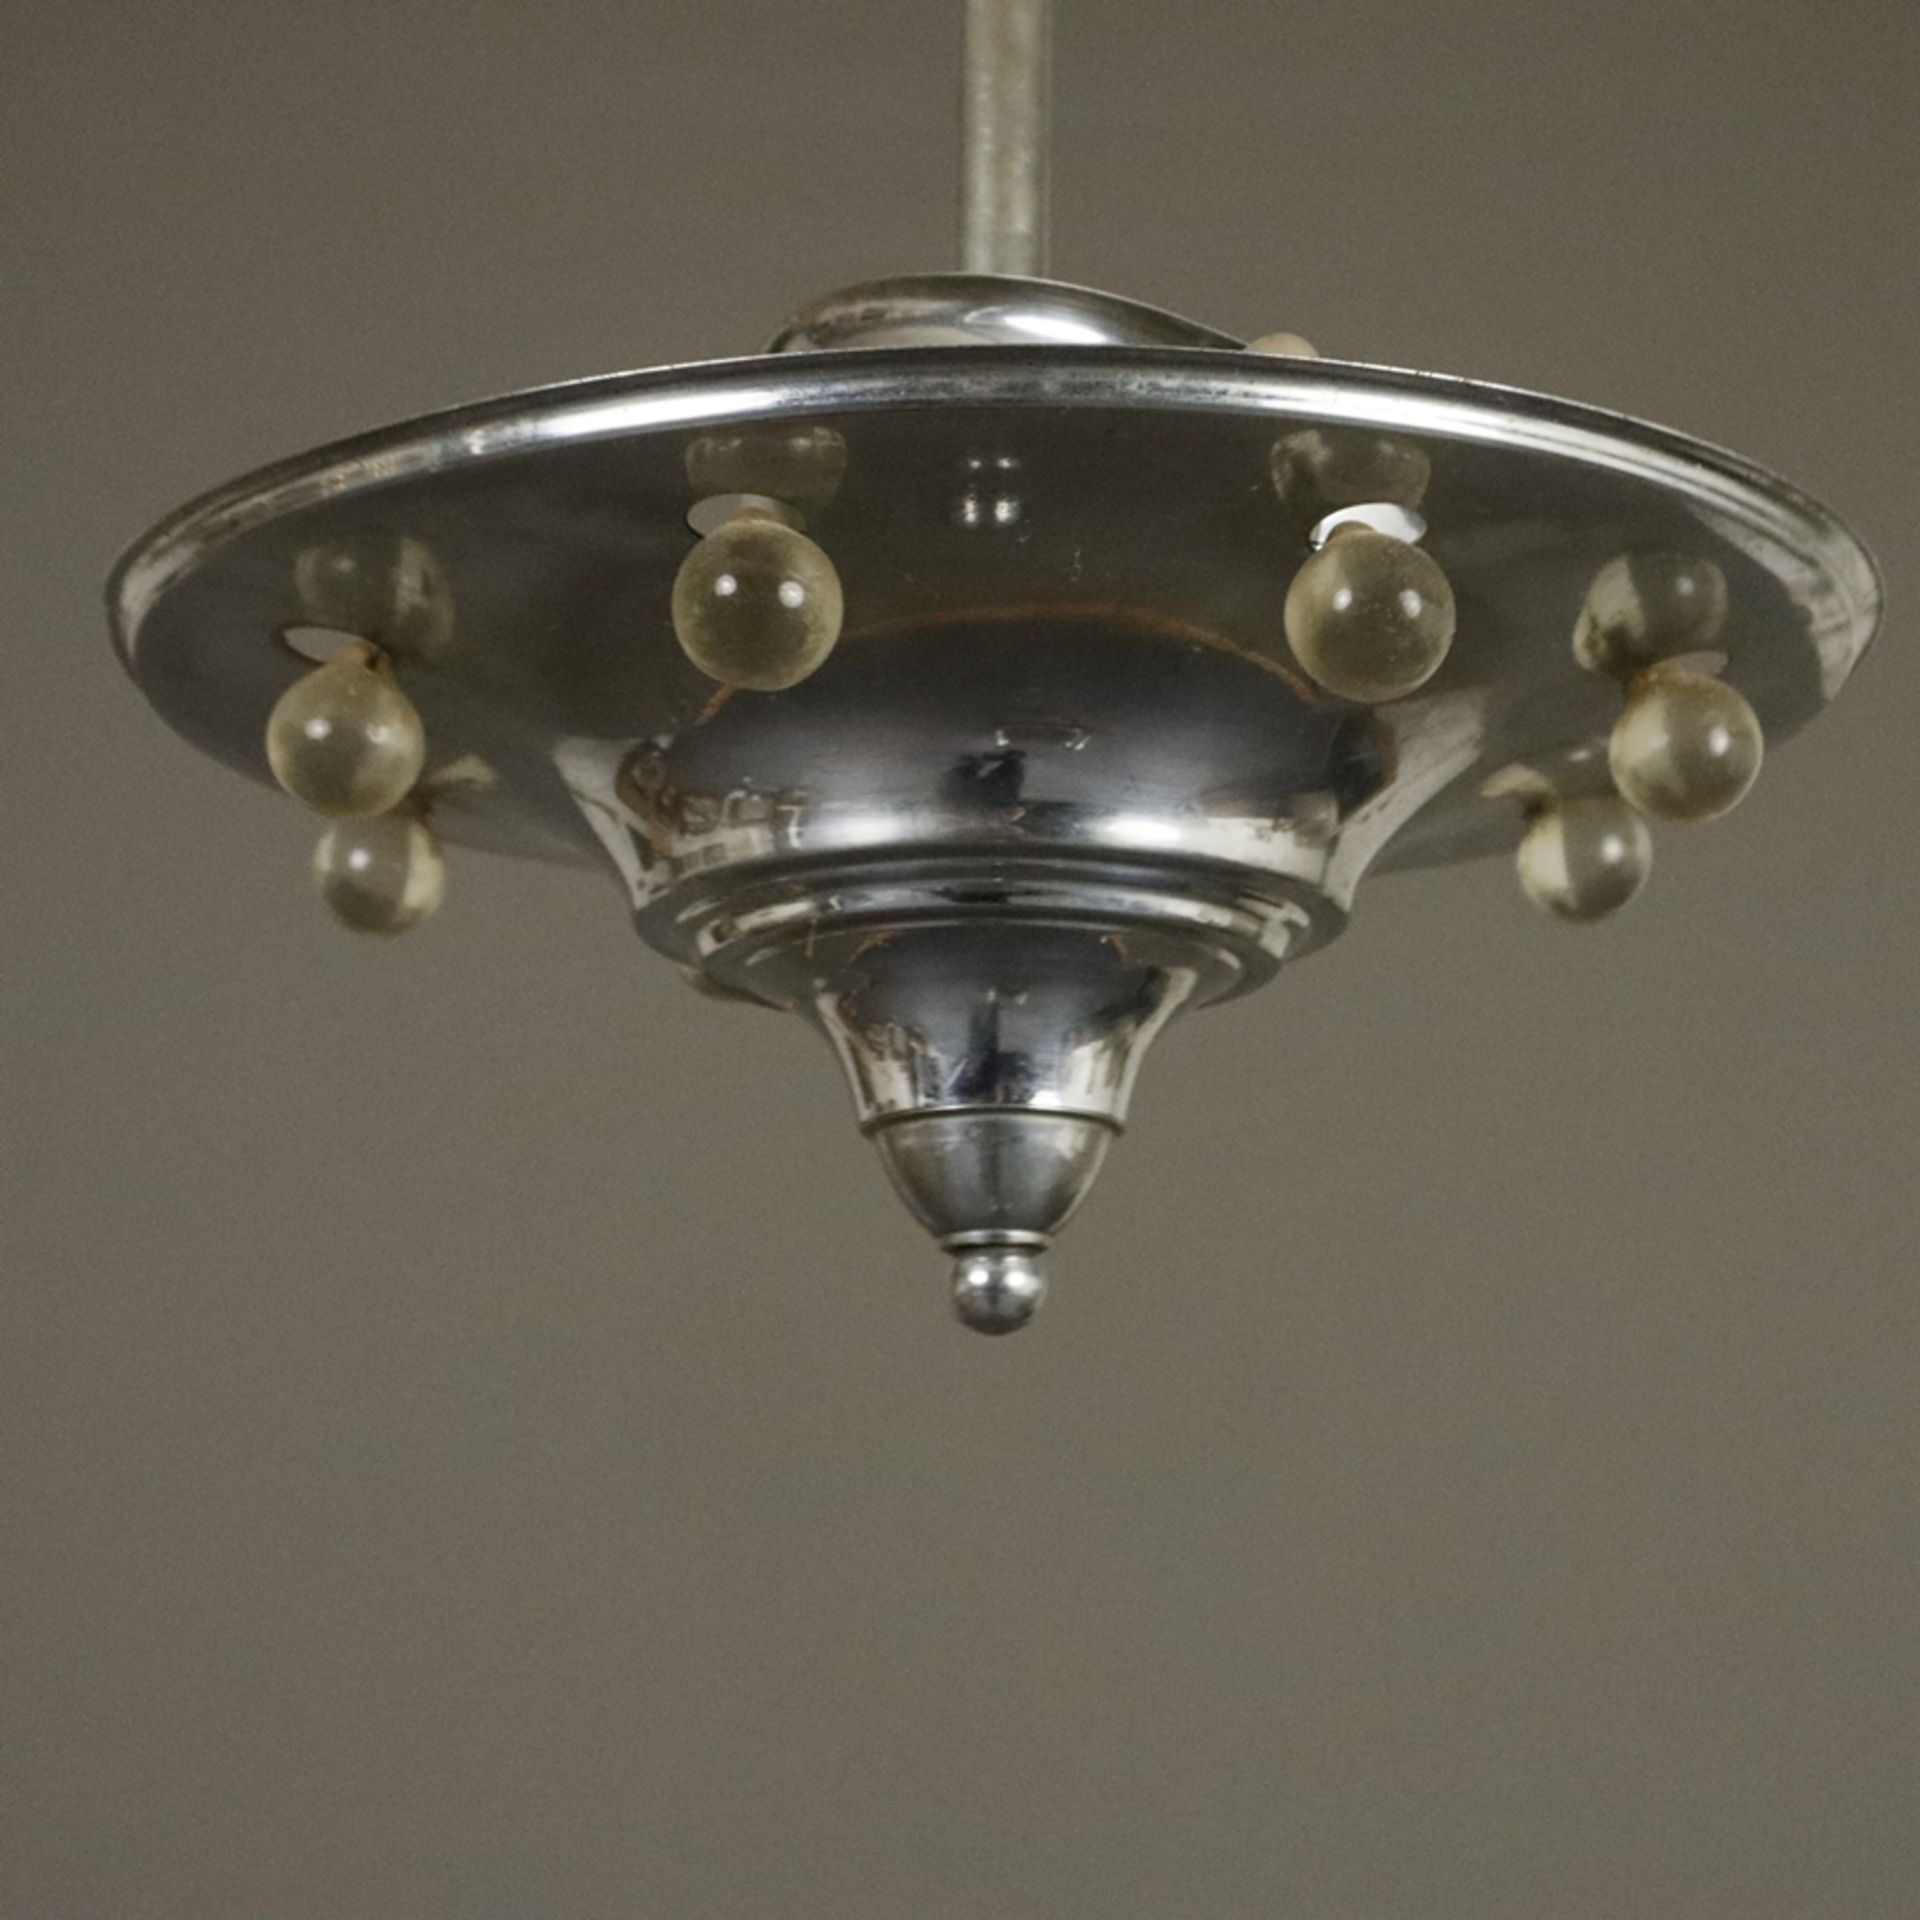 Art Déco-Deckenlampe - wohl Frankreich um 1920/30, trichterförmige Metallschale mit umlaufendem Gla - Image 2 of 5